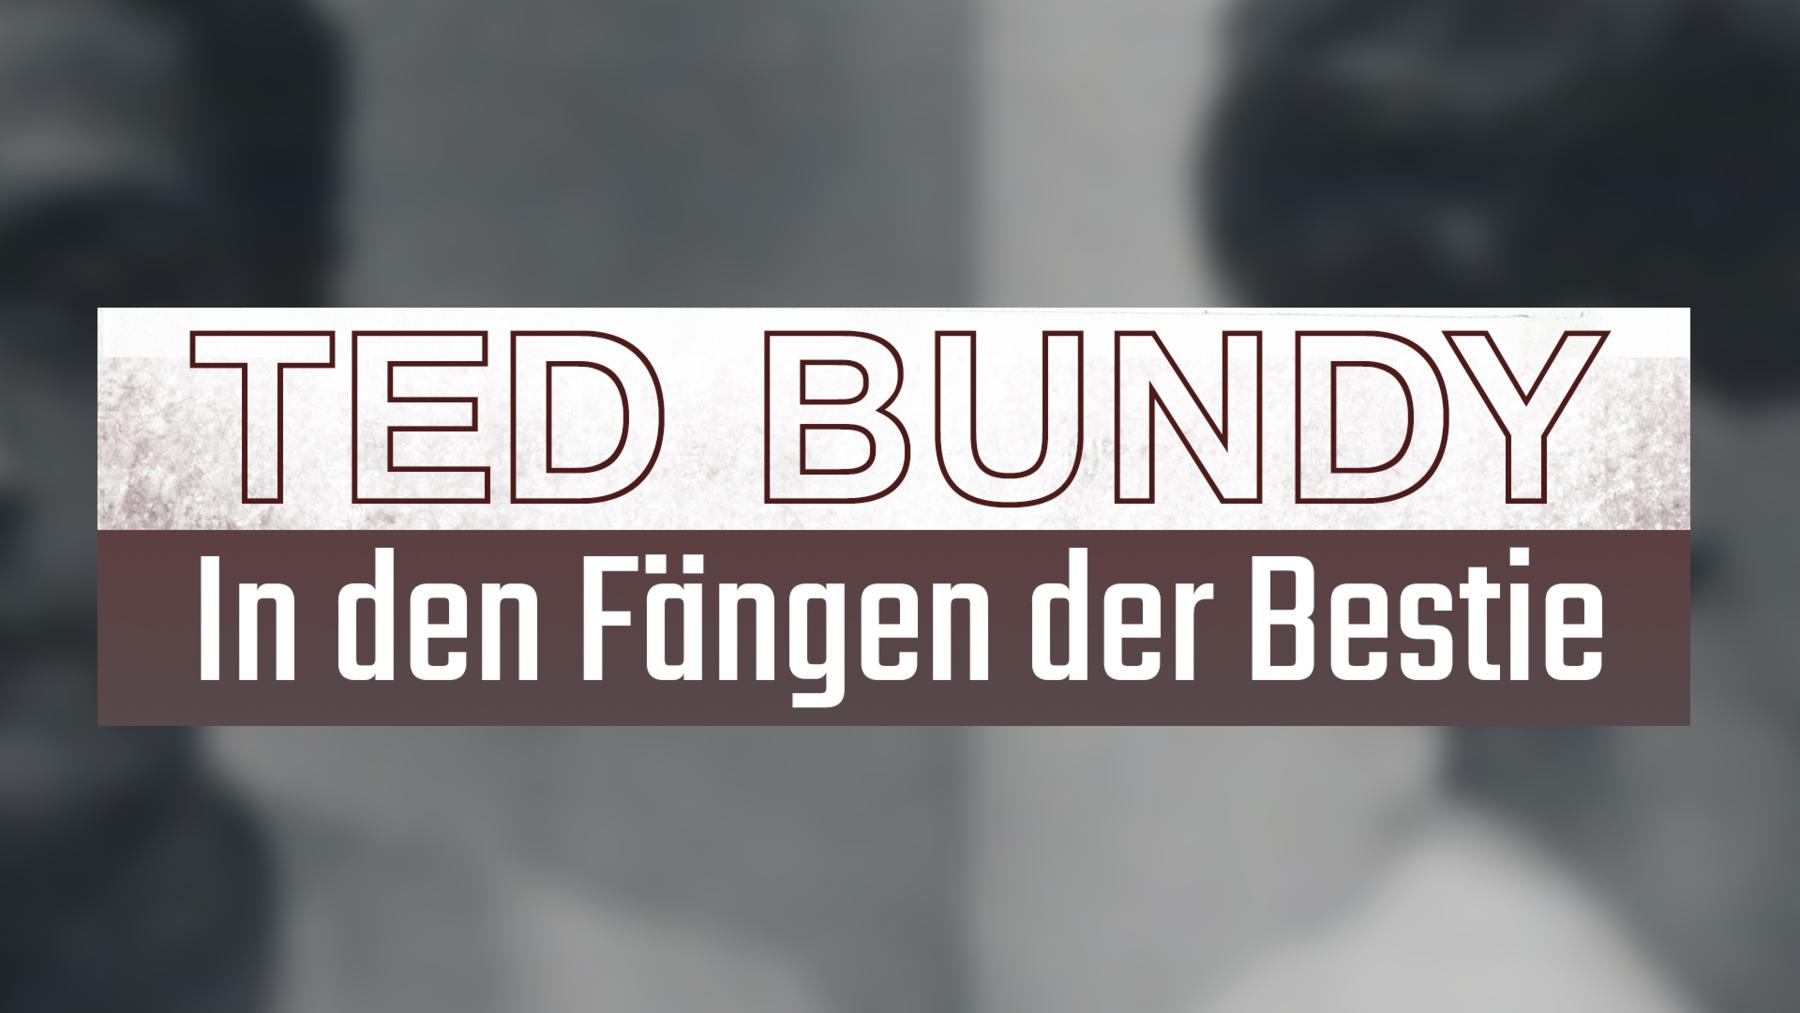 Ted Bundy: In den Fängen der Bestie